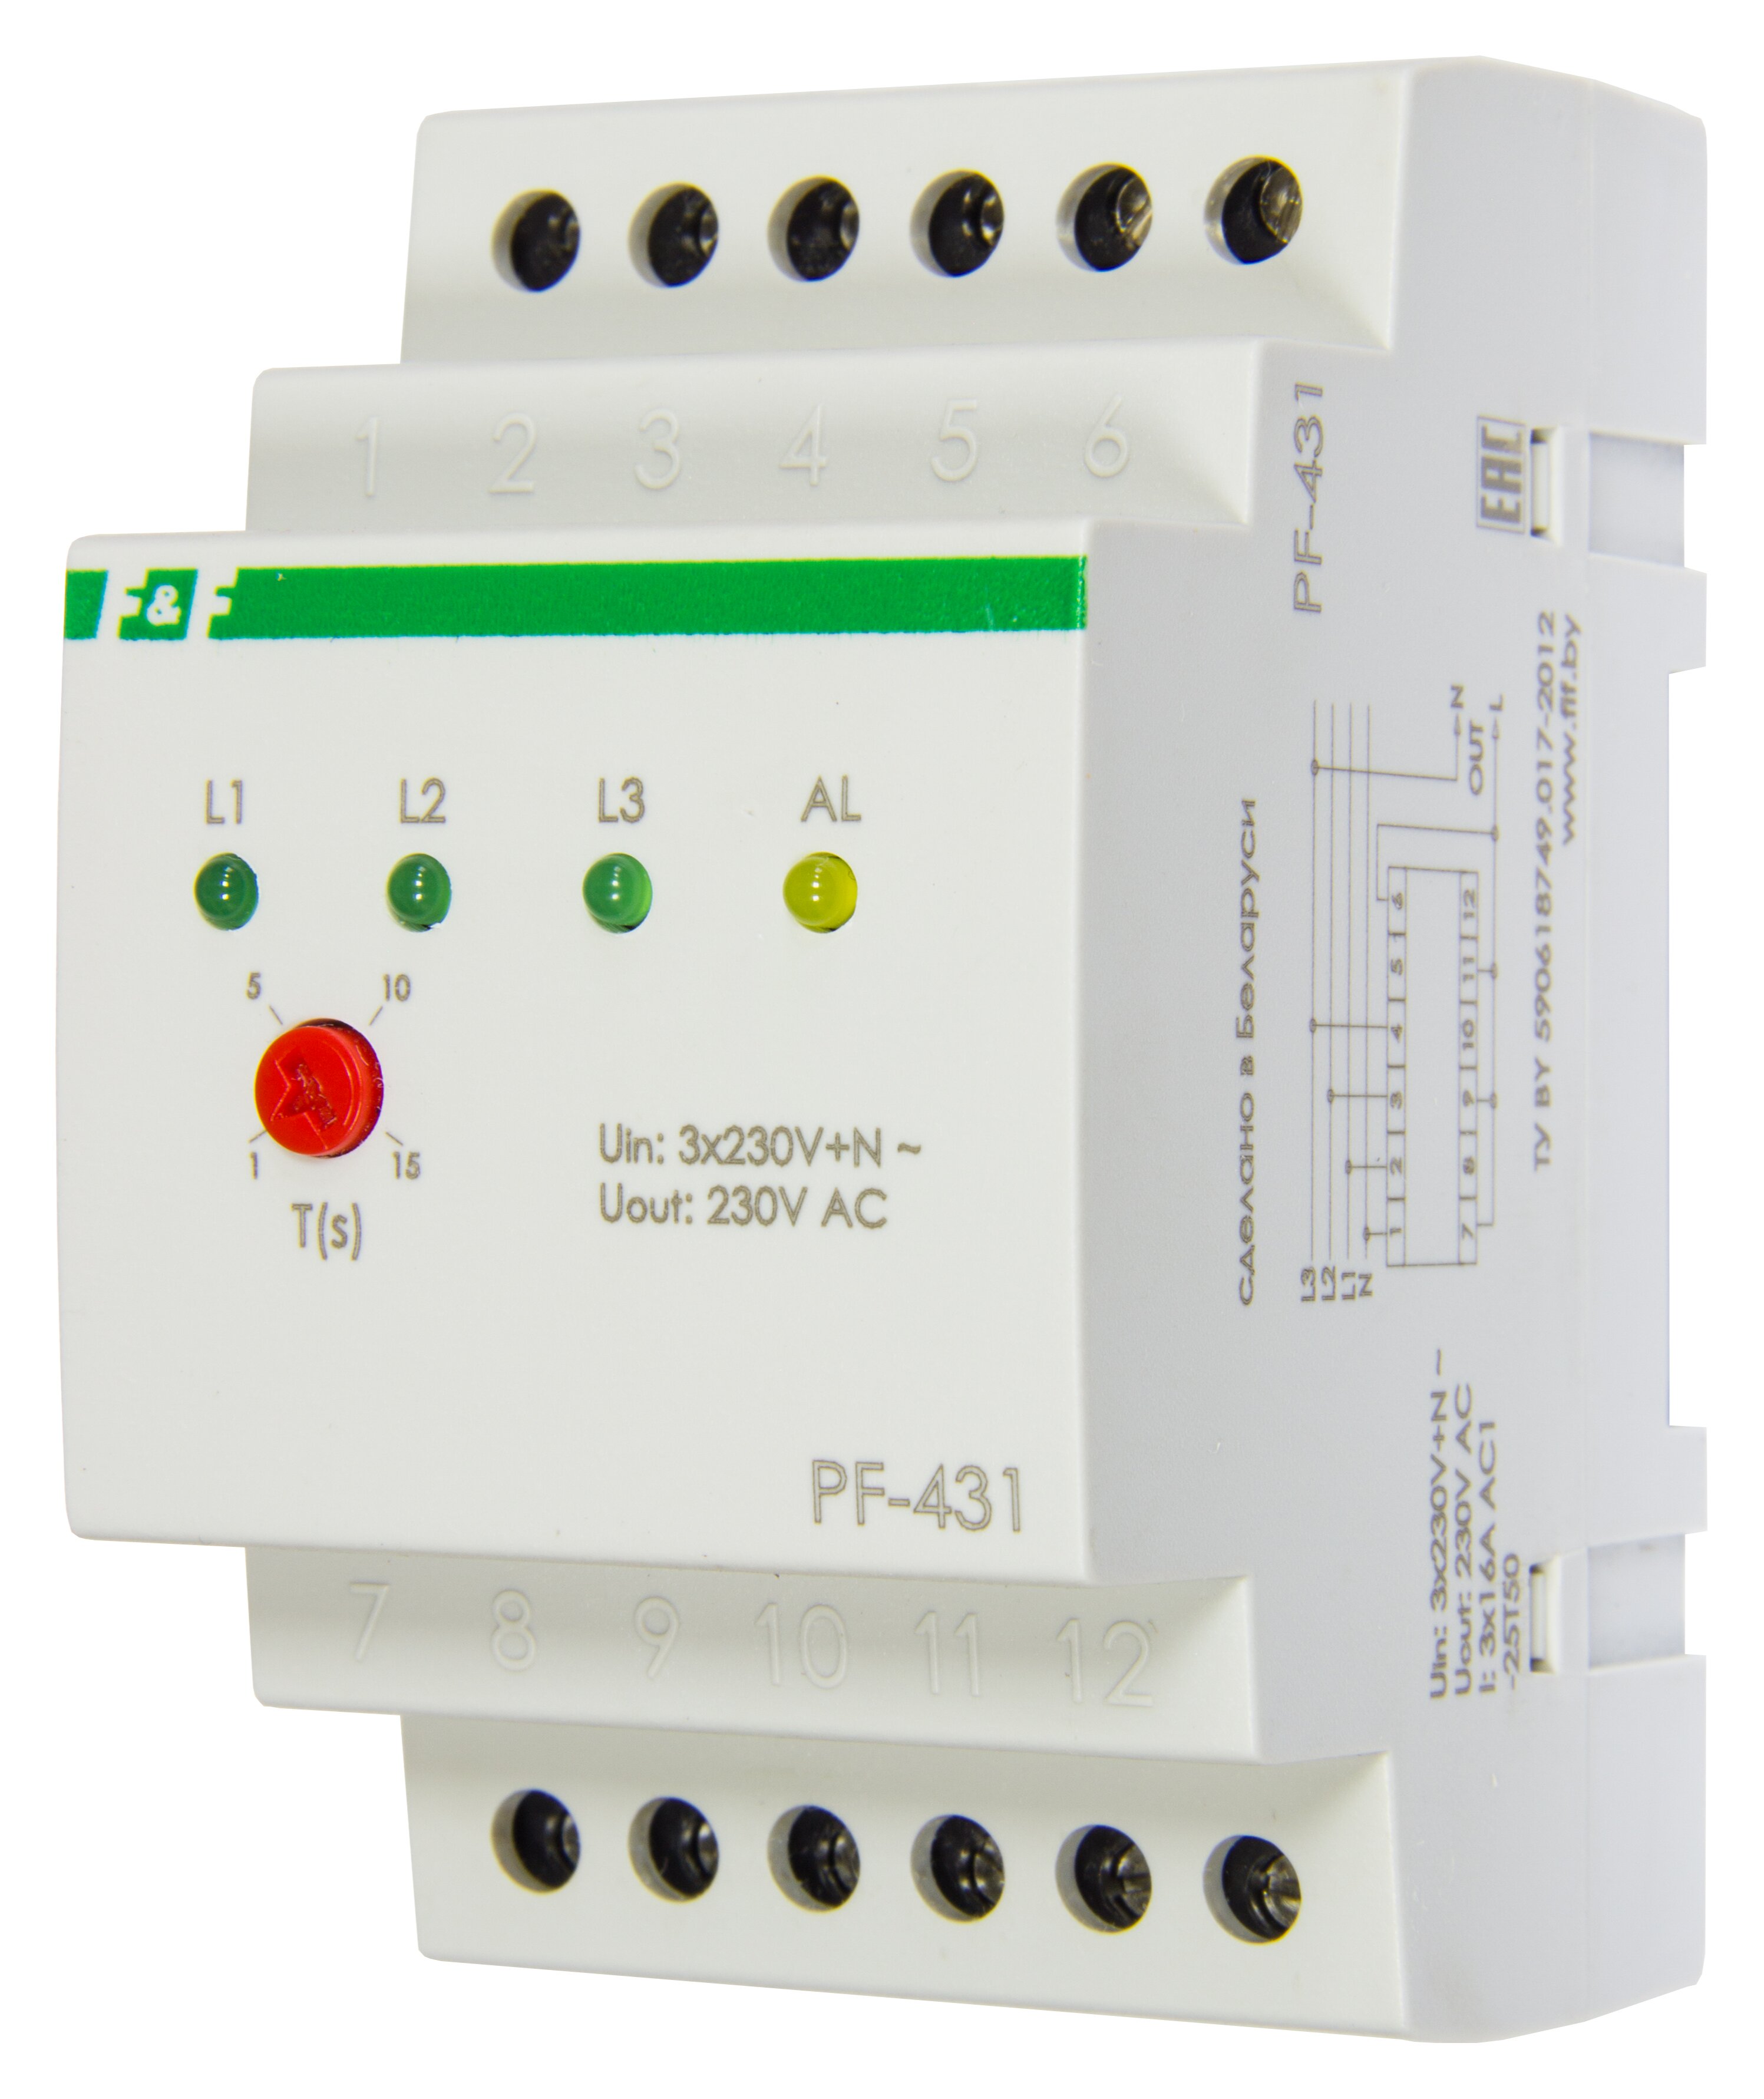 Переключатель  фаз PF-431 предназначен для повышения надежности питания однофазных потребителей, контролирует напряжение и подключает фазу, которая соответствует заданным параметрам.